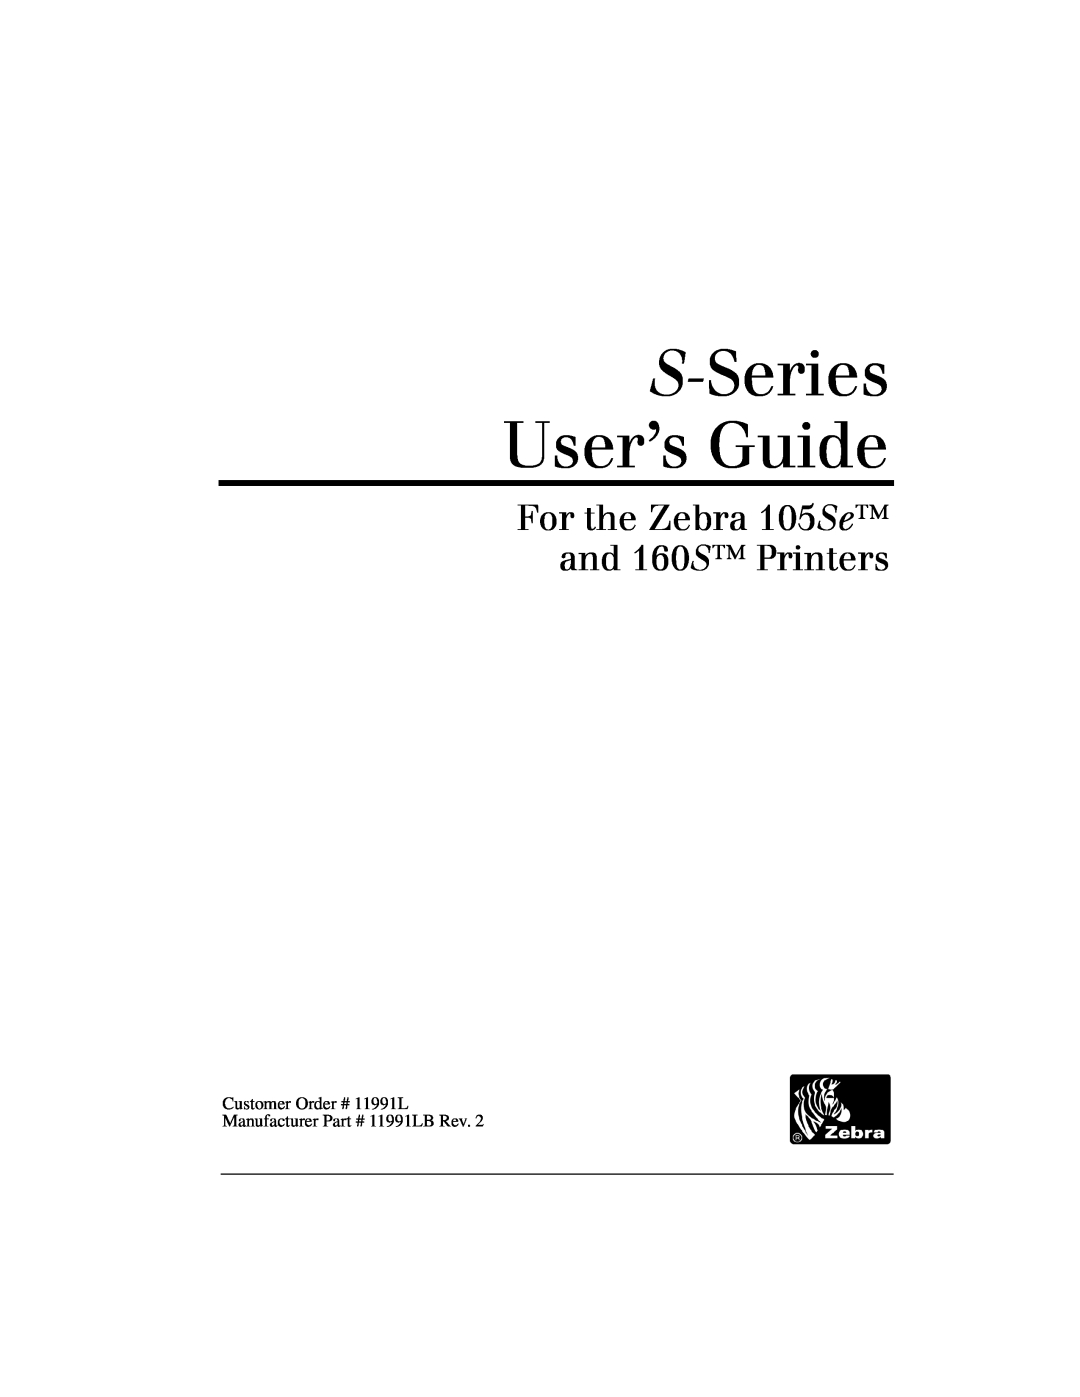 Zebra Technologies 105Se manual 0Š/kÂŠkÅ 3ÅkÂ¿ÅÌ×Šbk, žÂÌÎ‡kÌkNÂ@Ì¥æz0lÔ @šbÌ¥Êæ0ÔÌ,ÂŠšÎkÂÅ 